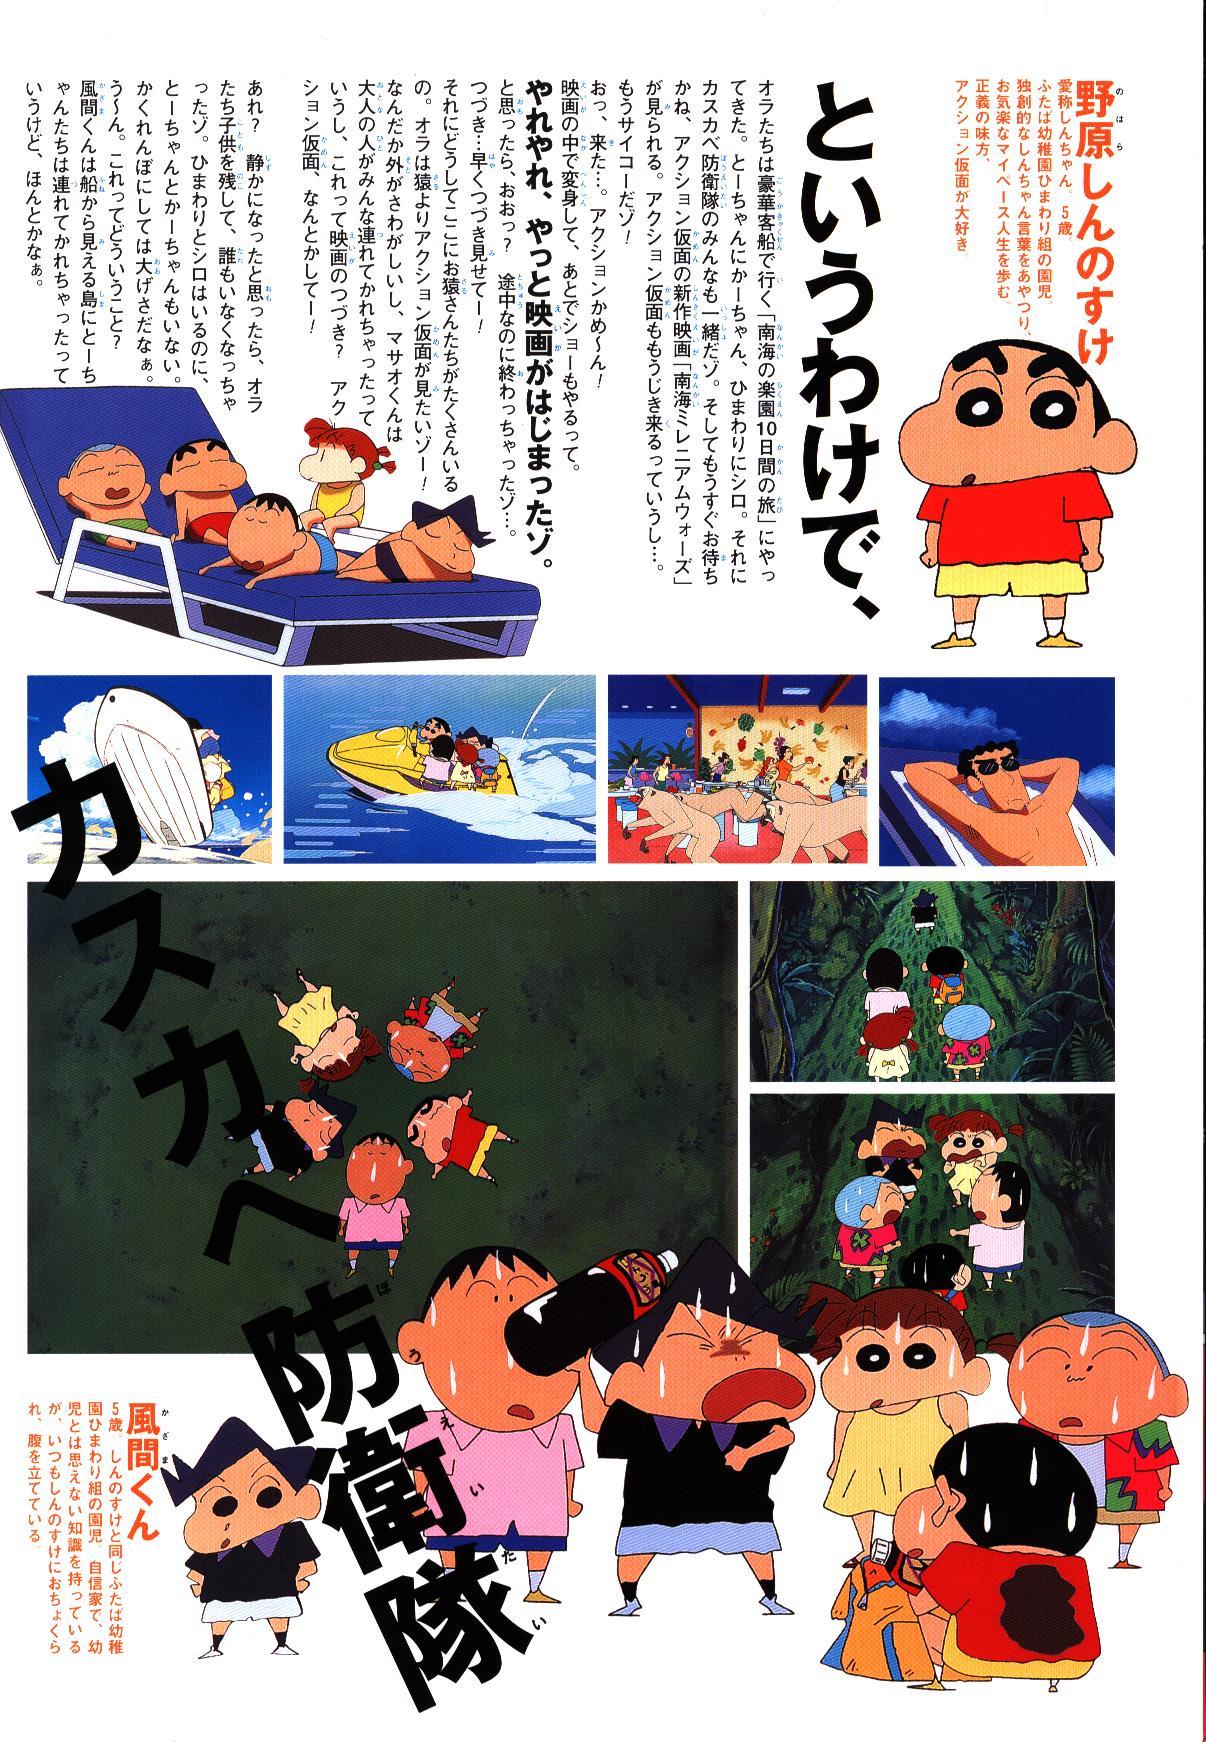 東宝 パンフレット クレヨンしんちゃん 嵐を呼ぶジャングル 2000年